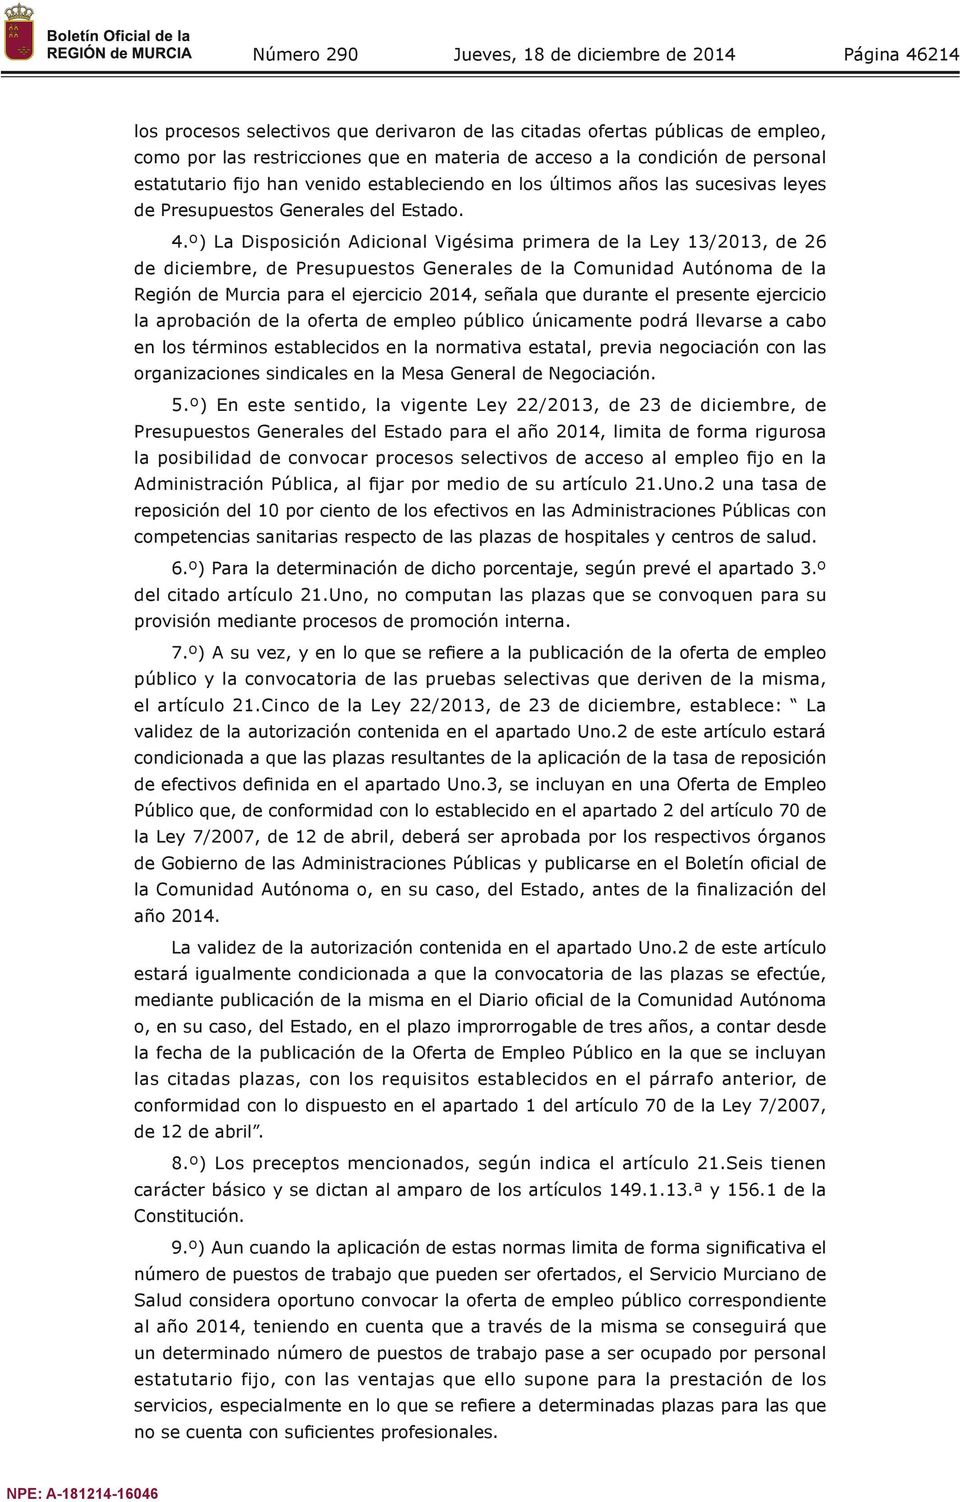 º) La Disposición Adicional Vigésima primera de la Ley 13/2013, de 26 de diciembre, de Presupuestos Generales de la Comunidad Autónoma de la Región de Murcia para el ejercicio 2014, señala que